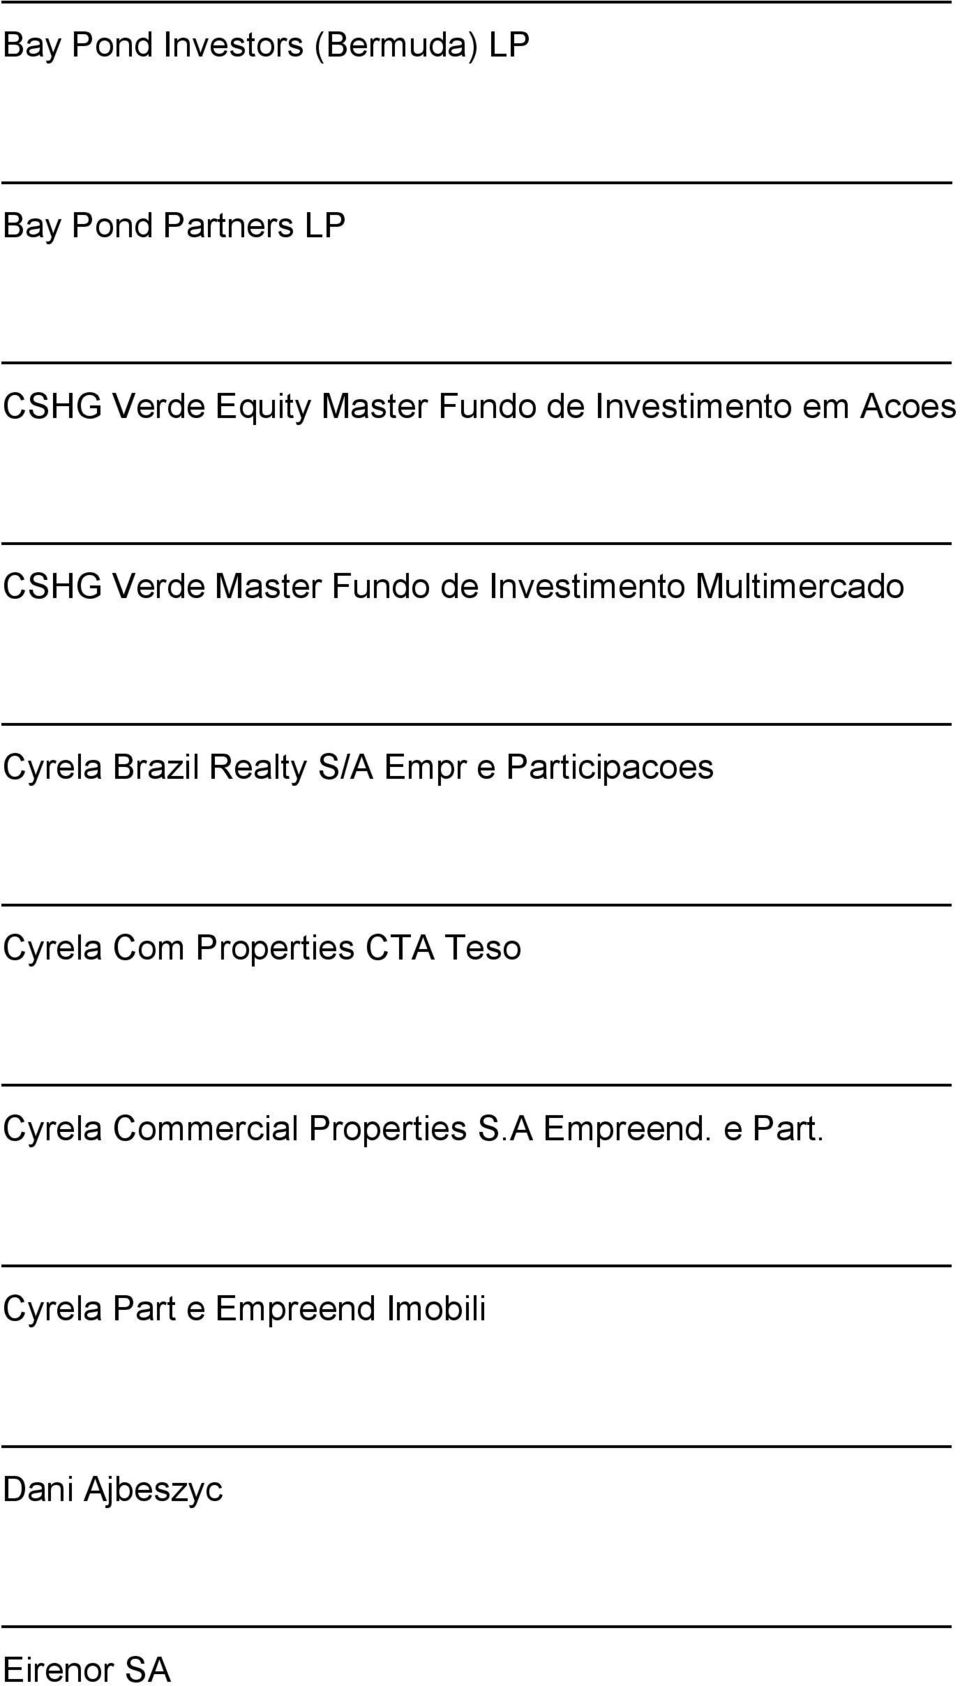 Brazil Realty S/A Empr e Participacoes Cyrela Com Properties CTA Teso Cyrela